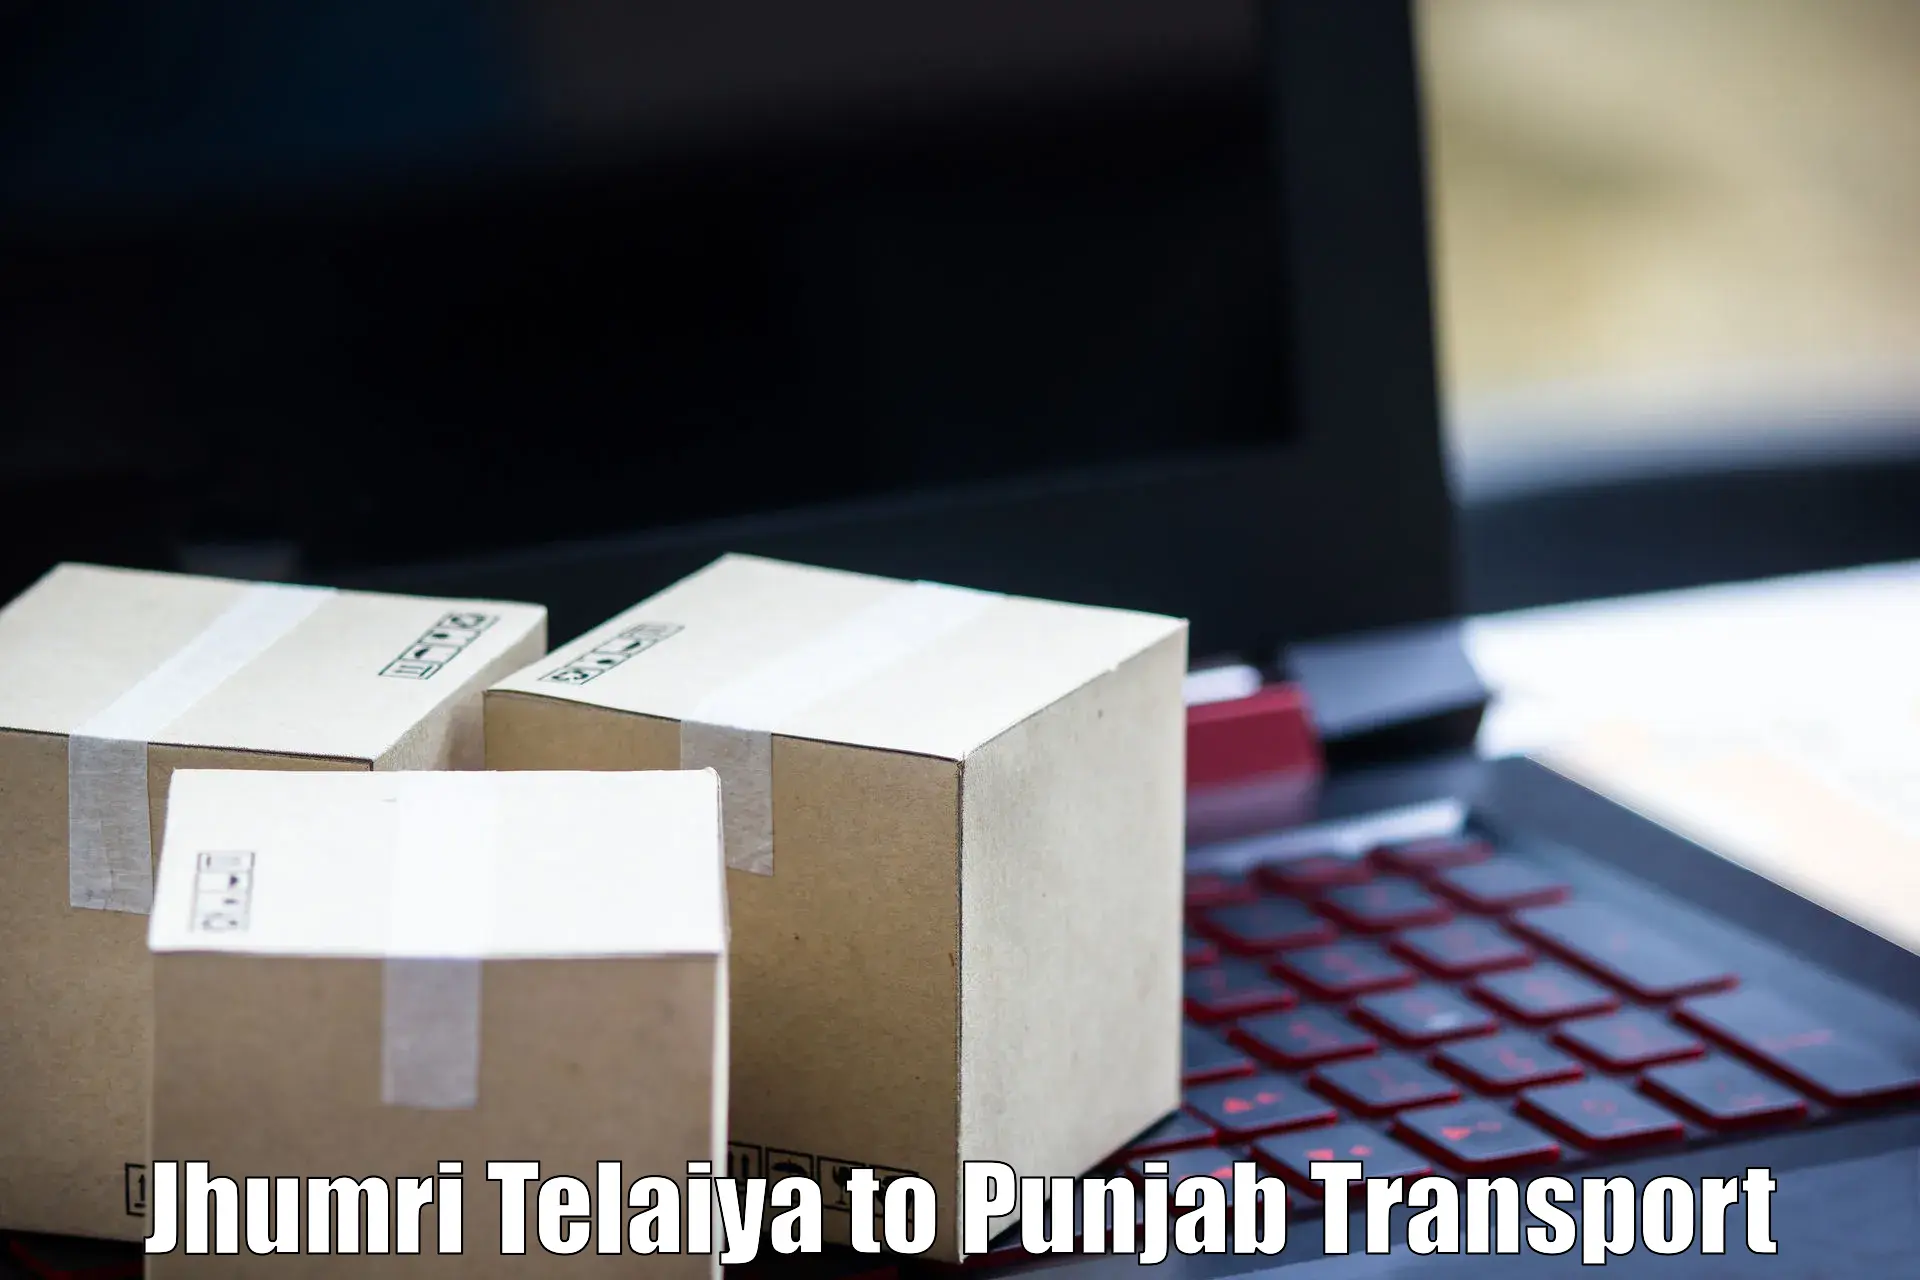 Shipping services Jhumri Telaiya to Zirakpur